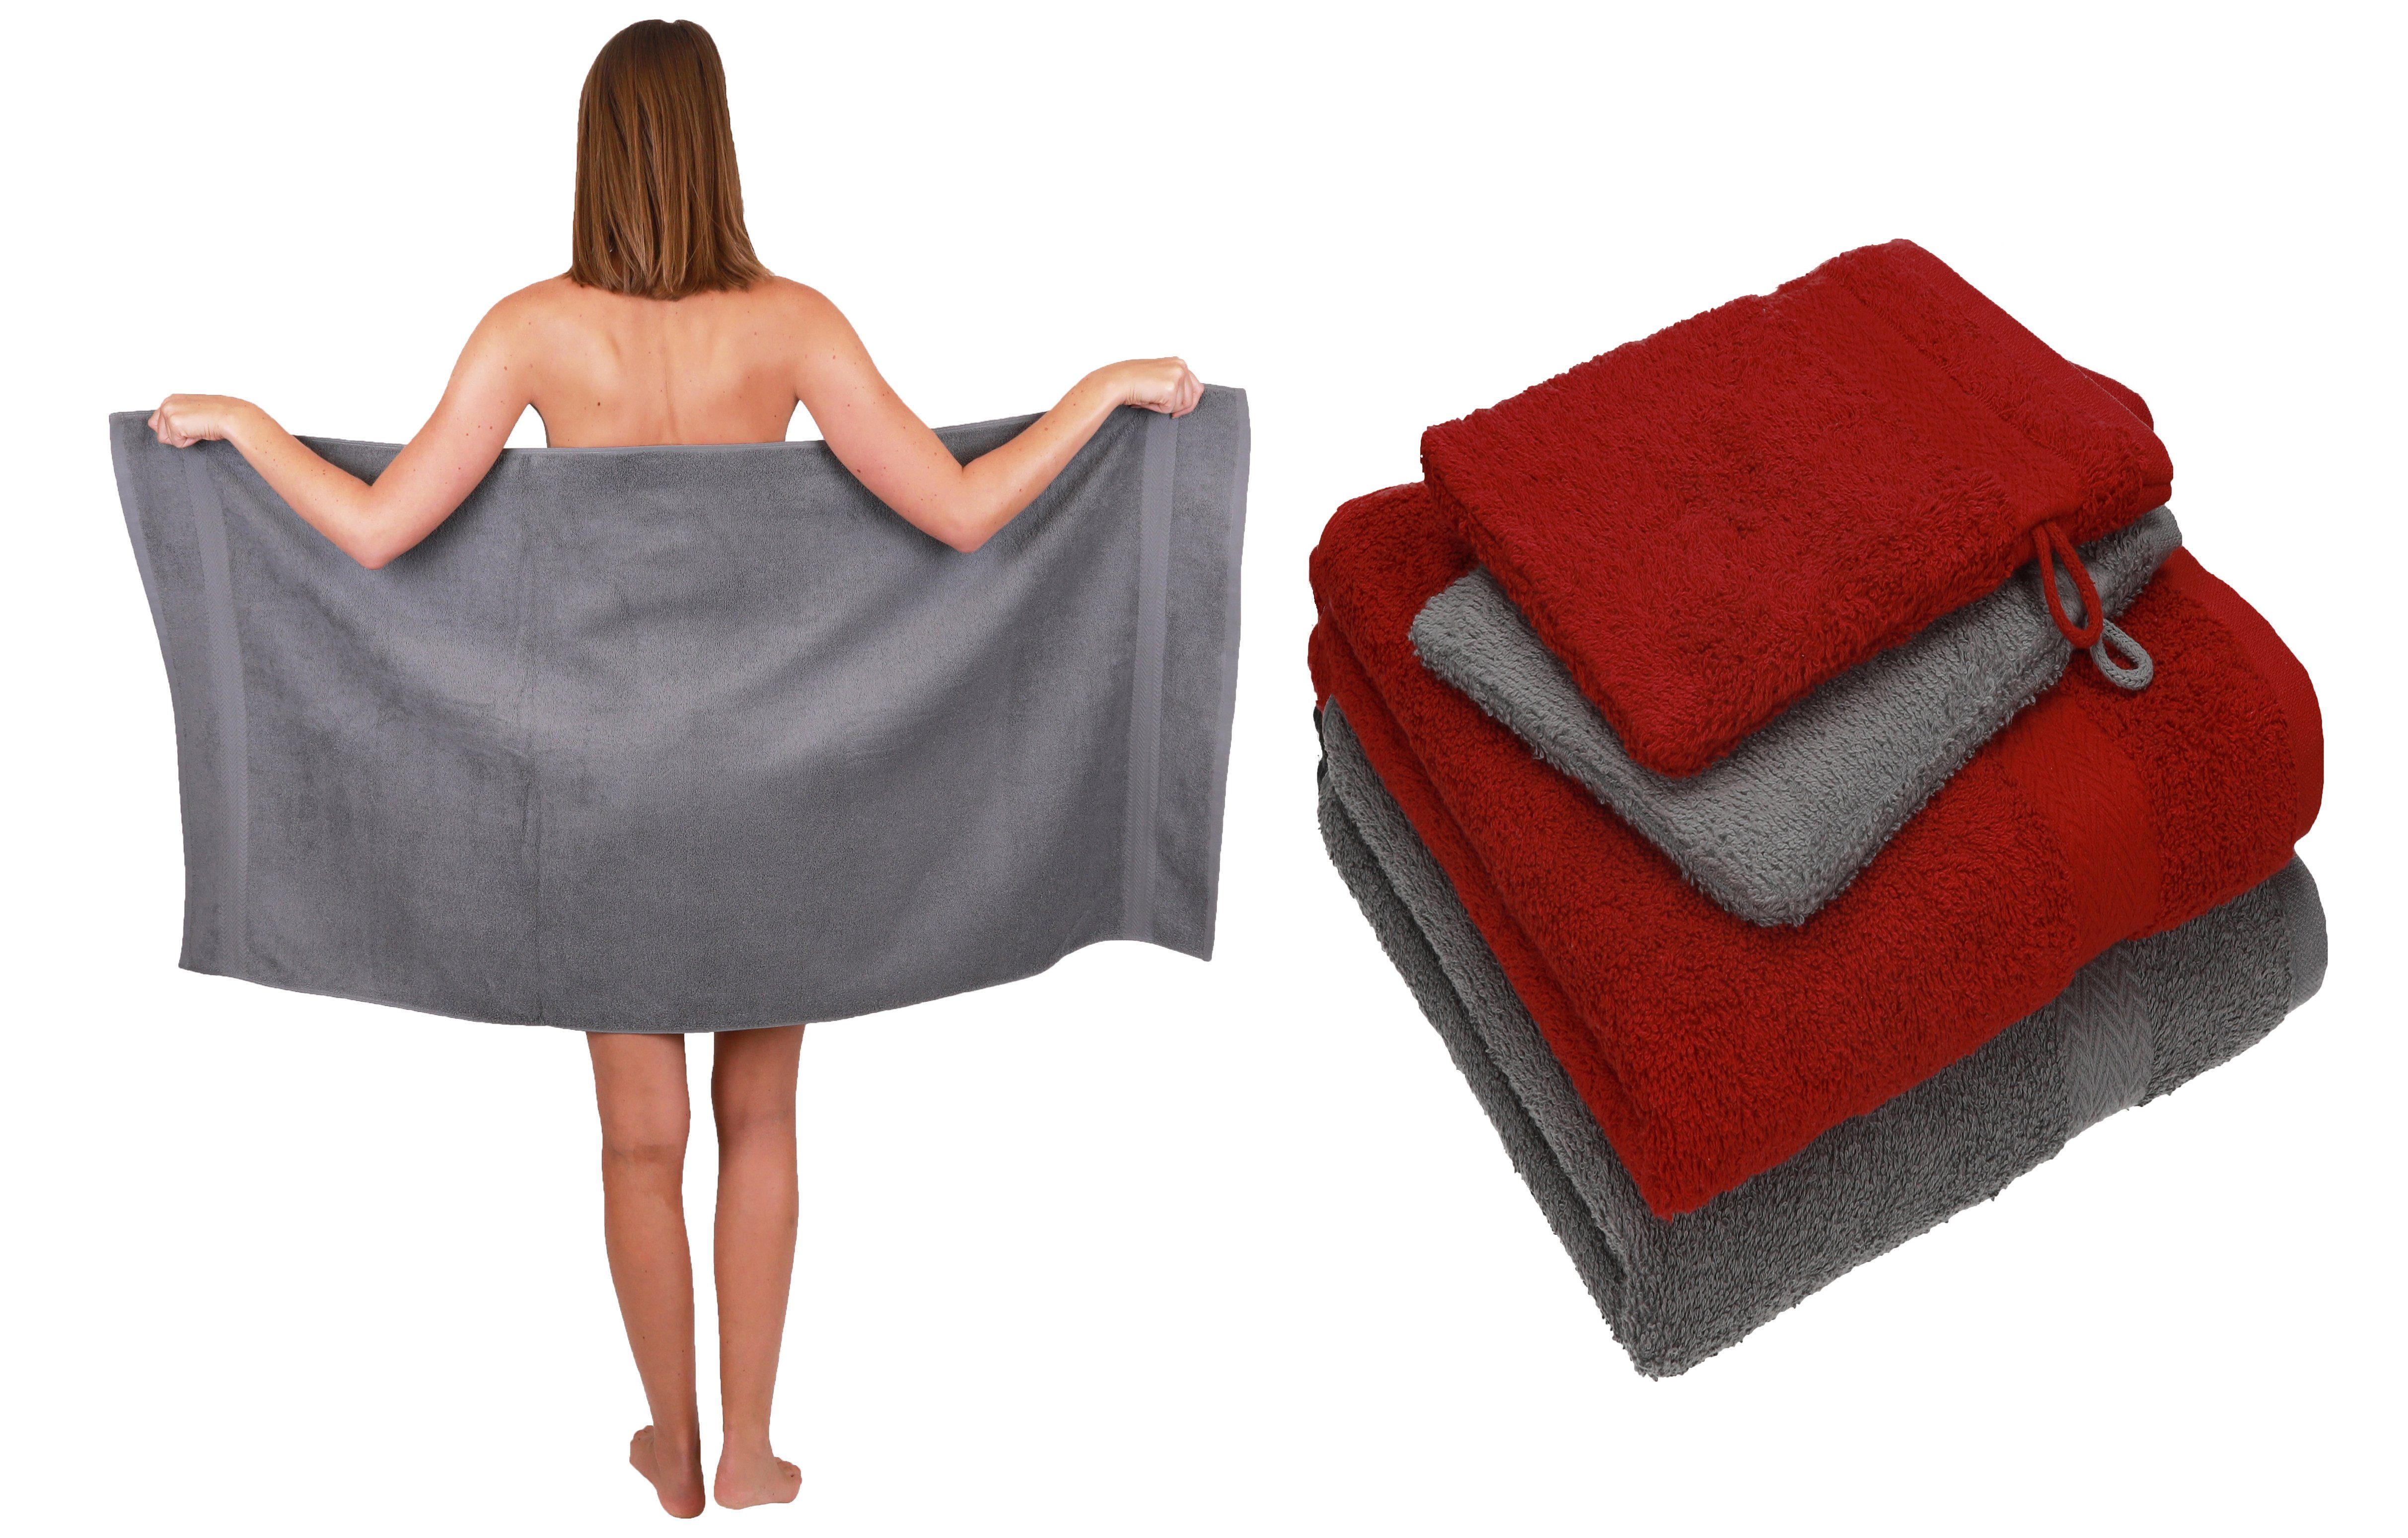 Betz Handtuch Set 5 TLG. Handtuch Set Single Pack 100% Baumwolle 1 Duschtuch 2 Handtücher 2 Waschhandschuhe, Baumwolle, (5-tlg) rubinrot